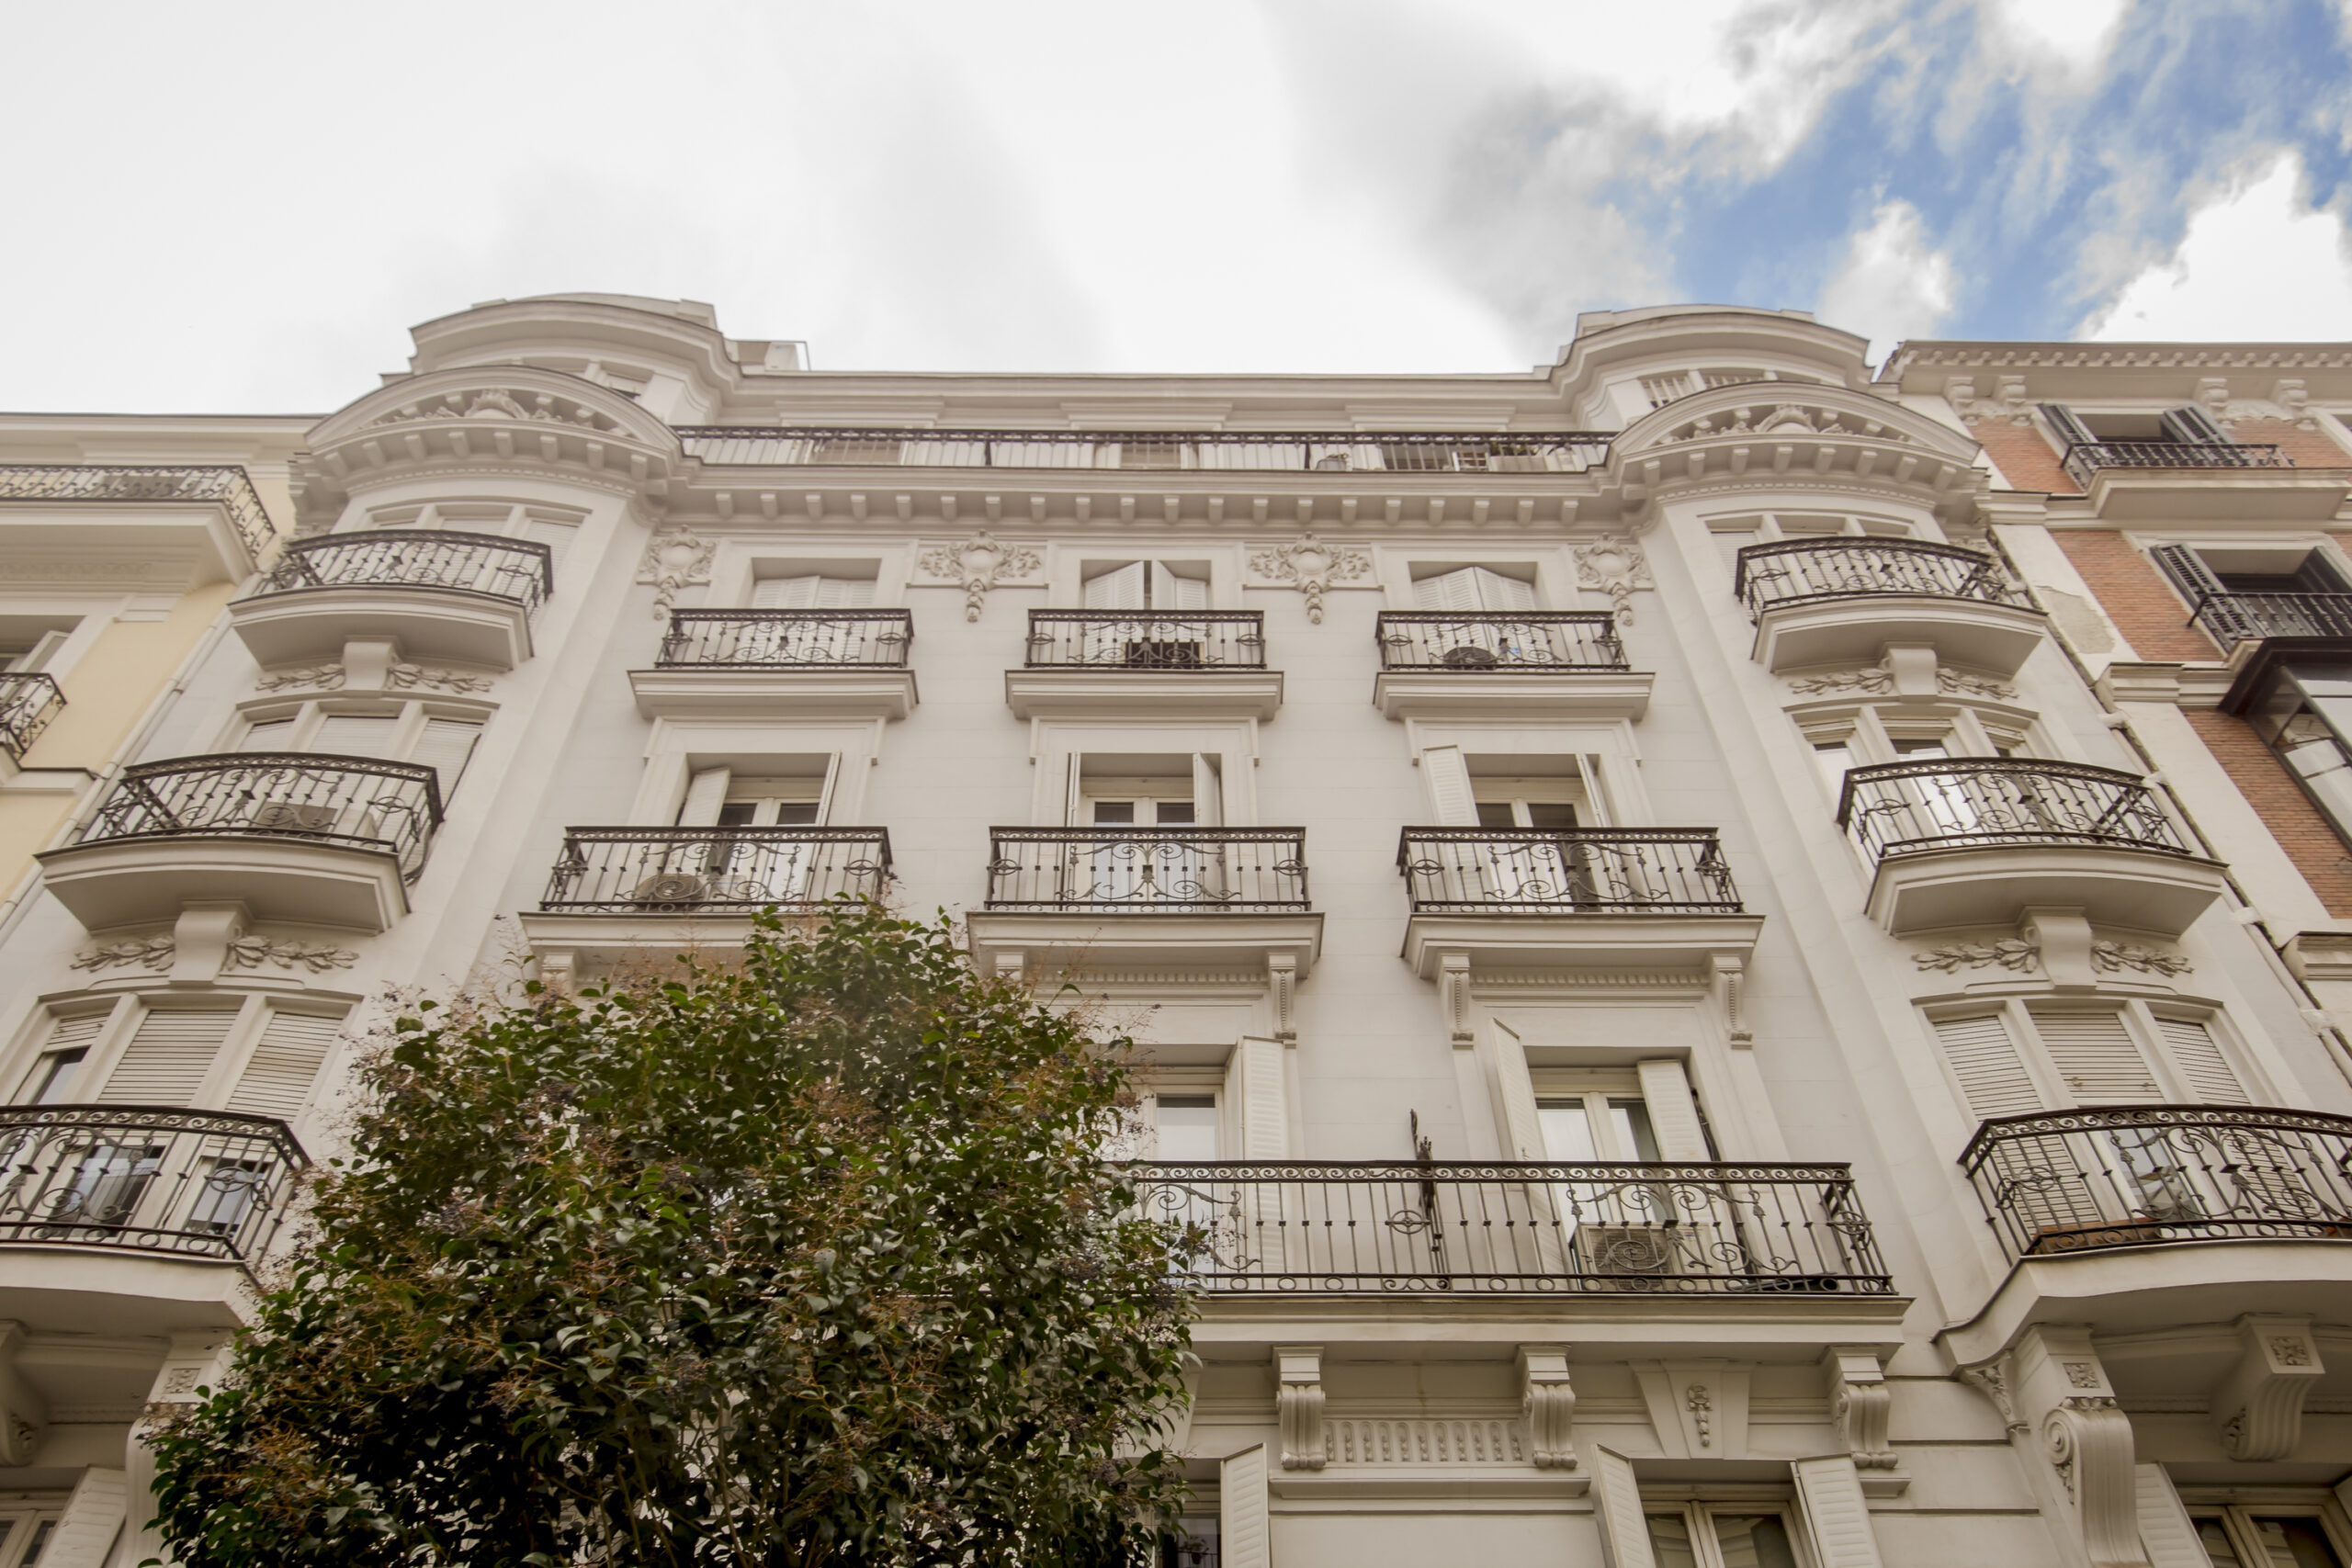 Descubre las fachadas y estilos arquitectónicos del Barrio de Salamanca